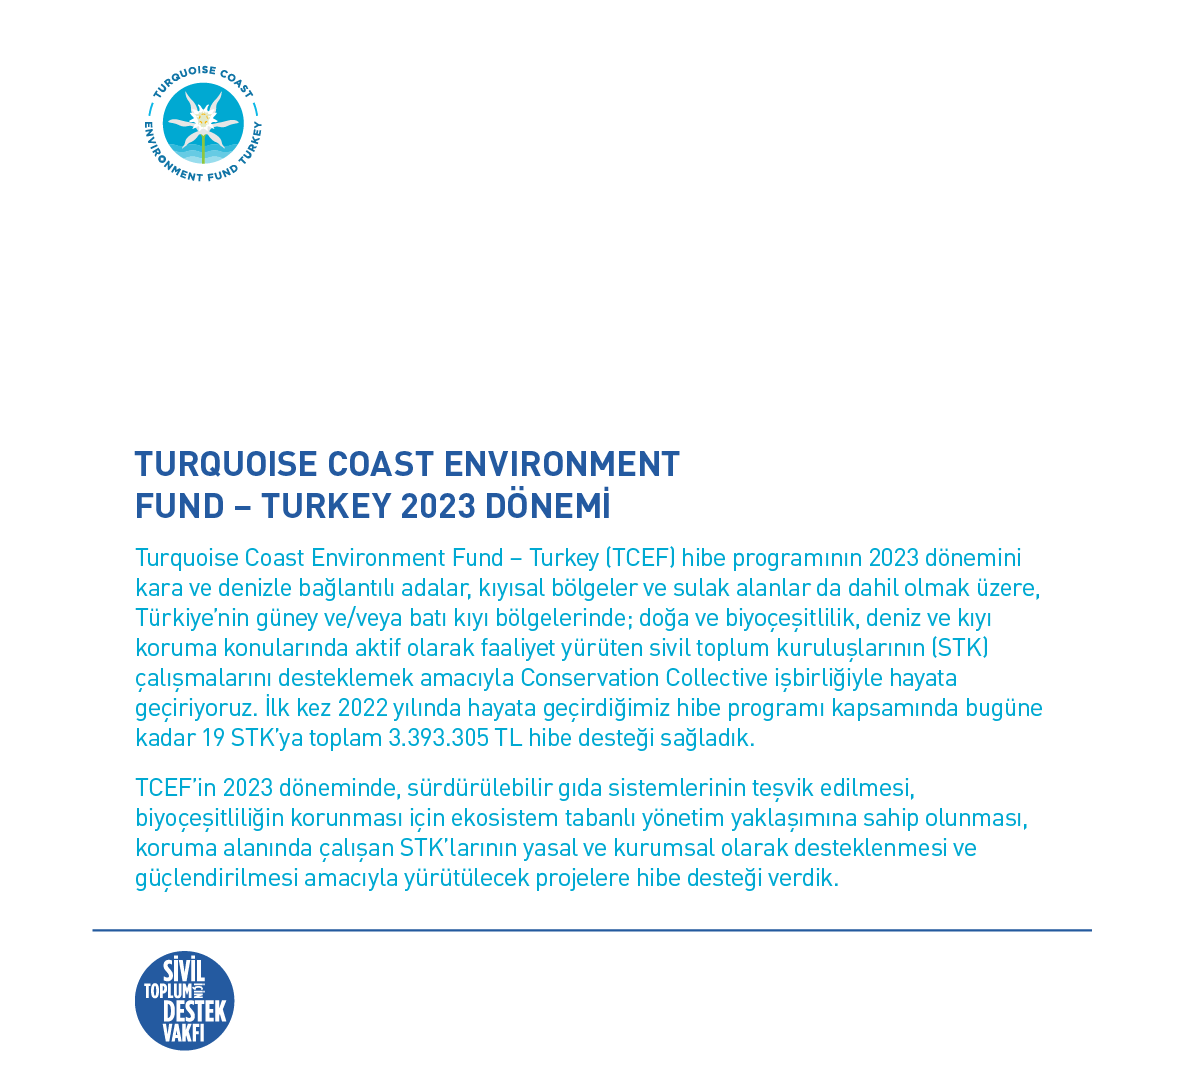 Turquoise Coast Environment Fund – Turkey’in 2023 Dönemi Fon Başlangıç Raporu Yayımlandı